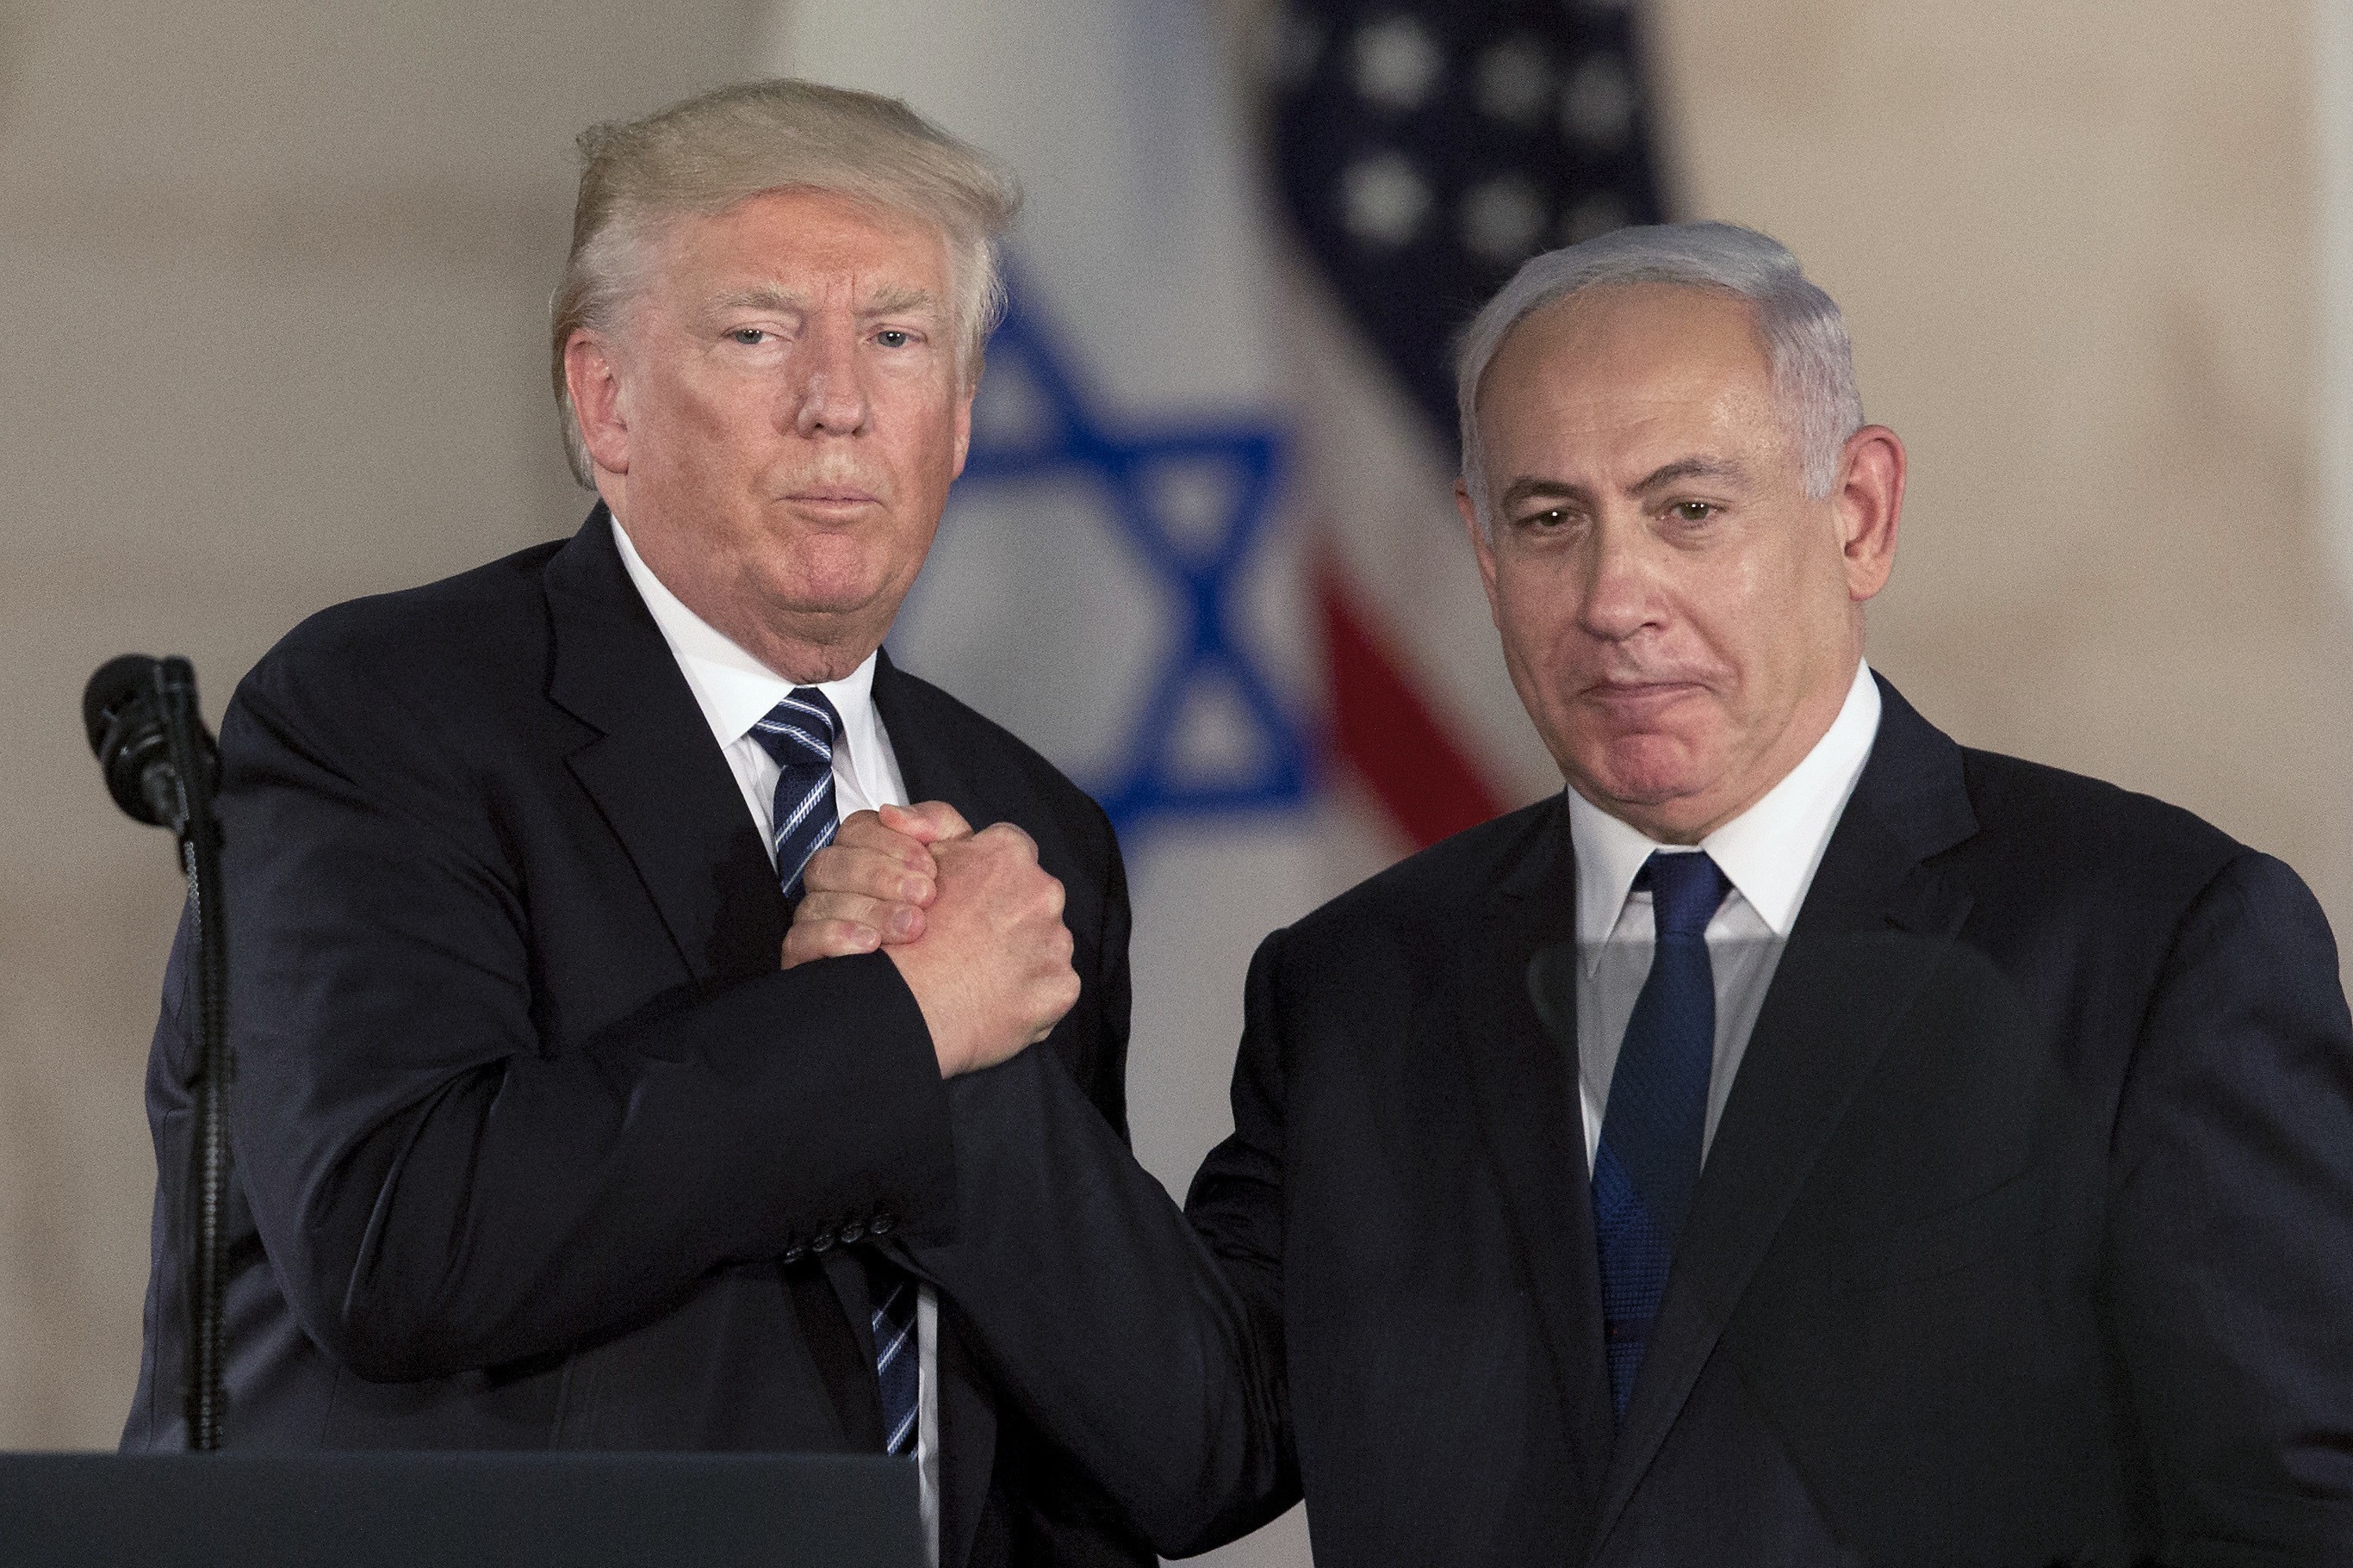 US President Donald Trump and Israeli Prime Minister Benjamin Netanyahu shake hands in Jerusalem in May. Photo: AP